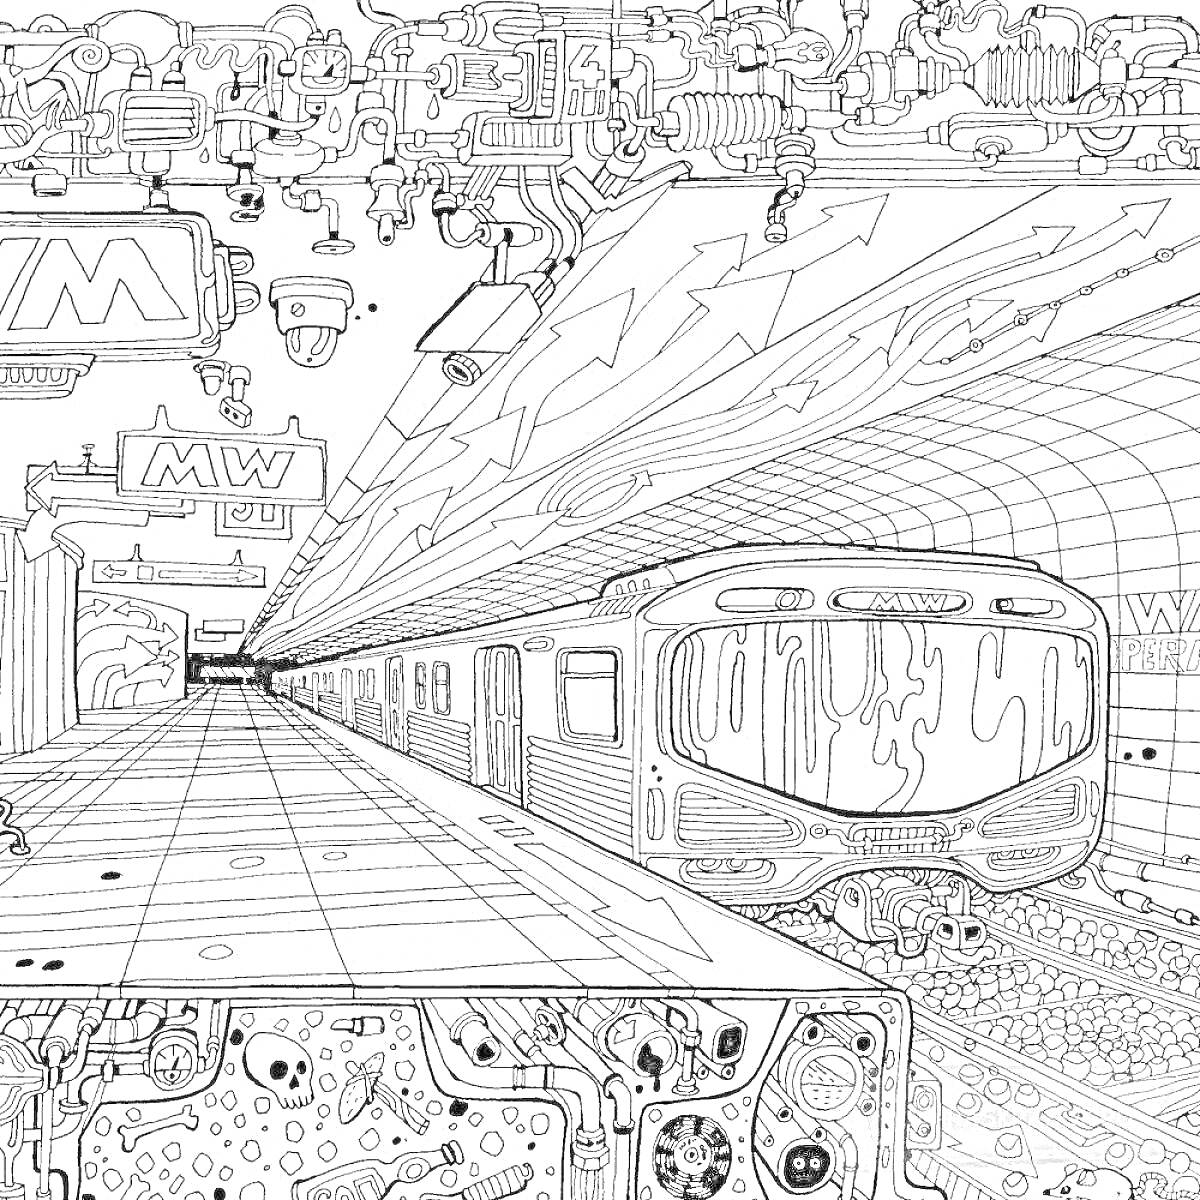 Раскраска Метро поезд приближается к платформе, элементы: поезд, платформа, туннель, трубы, арки, вывеска 